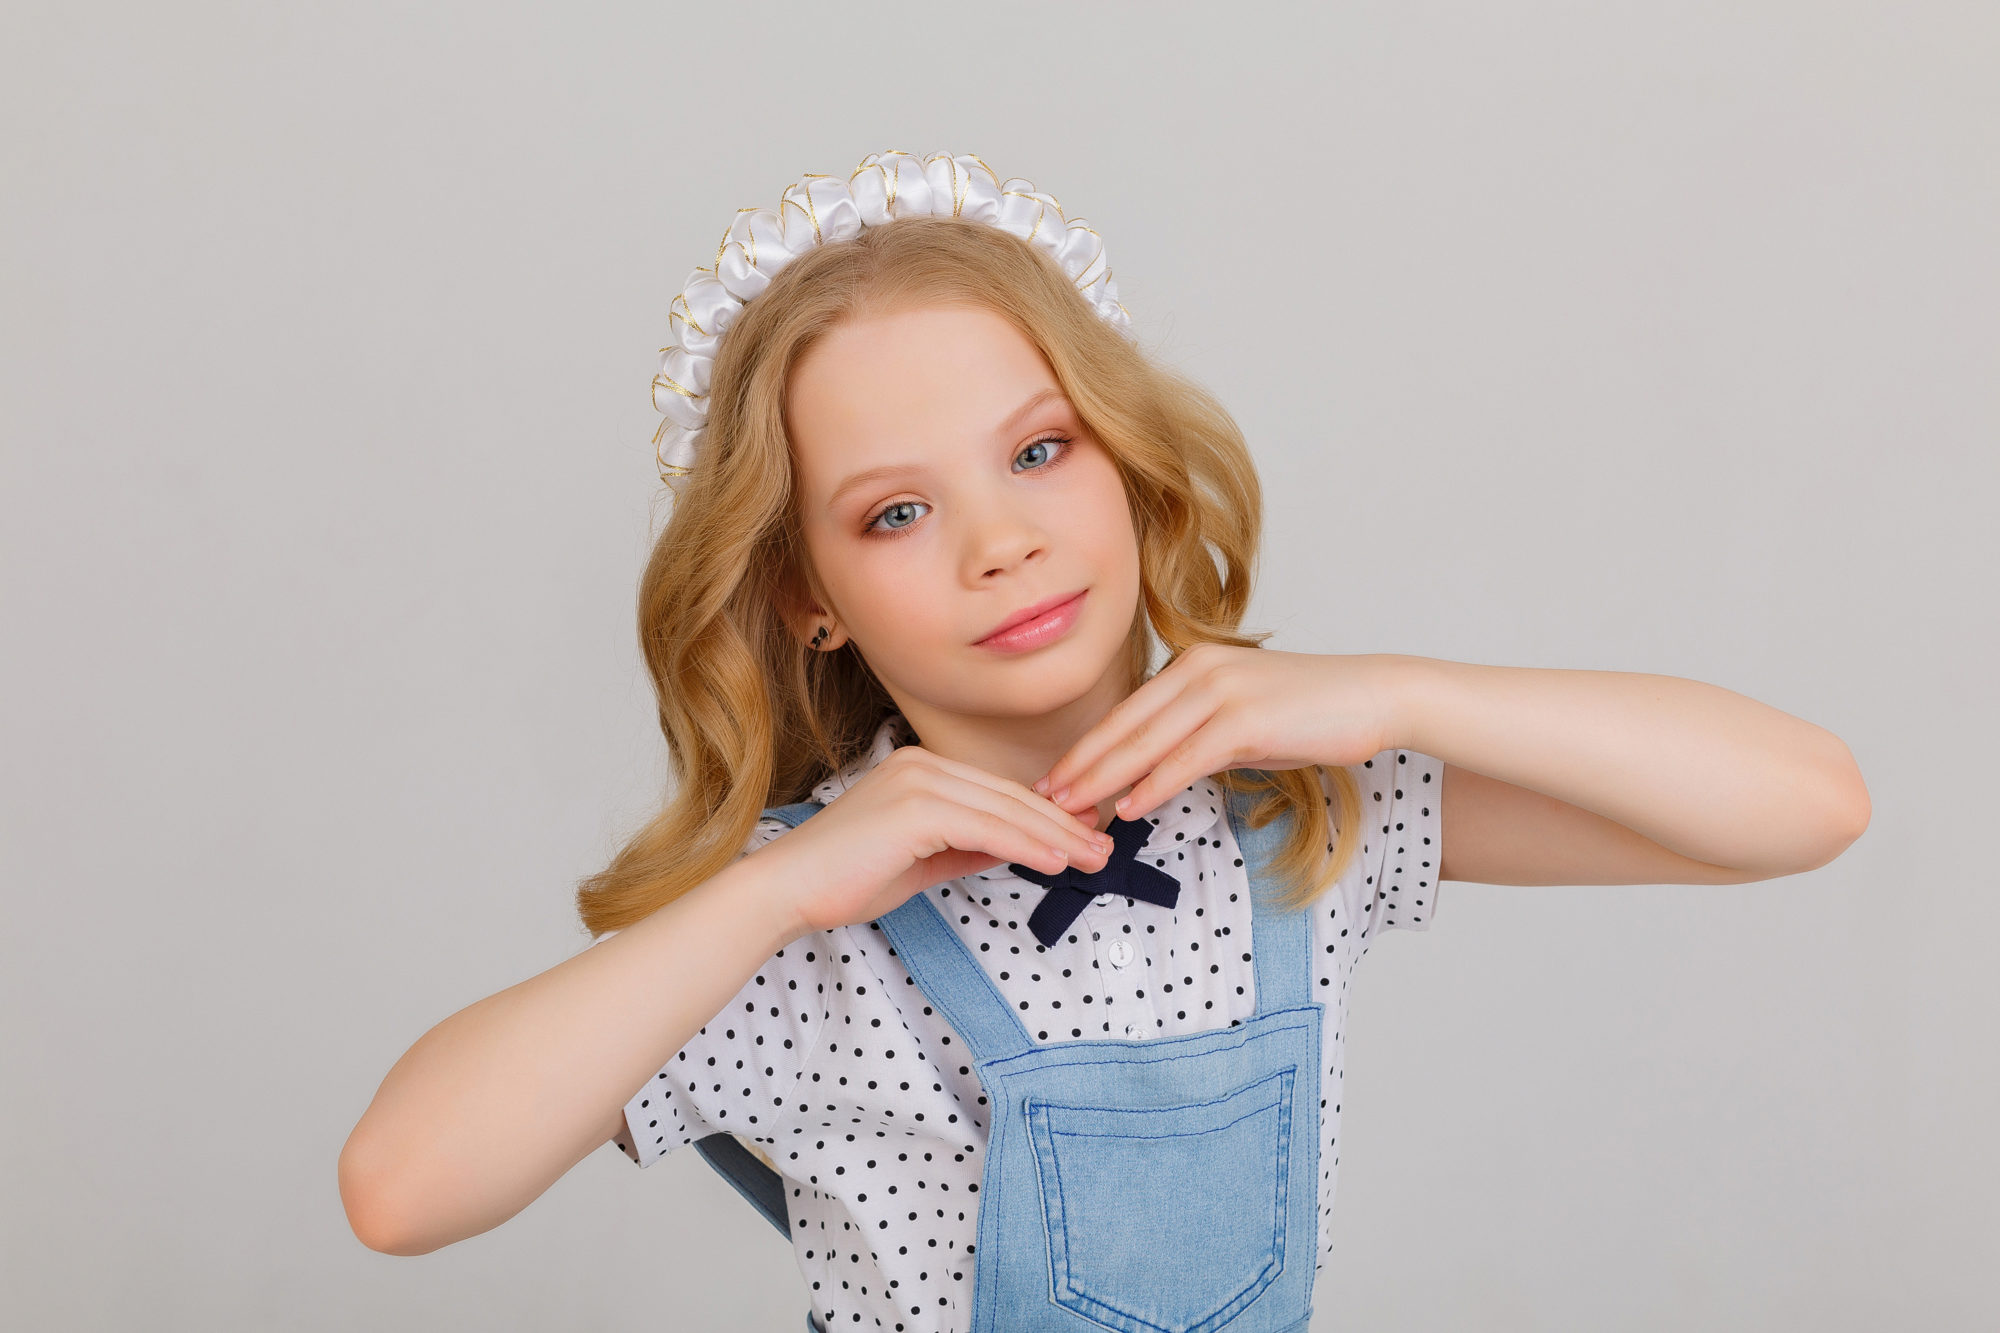 Детское модельное агентство в москве от 1 года отправить